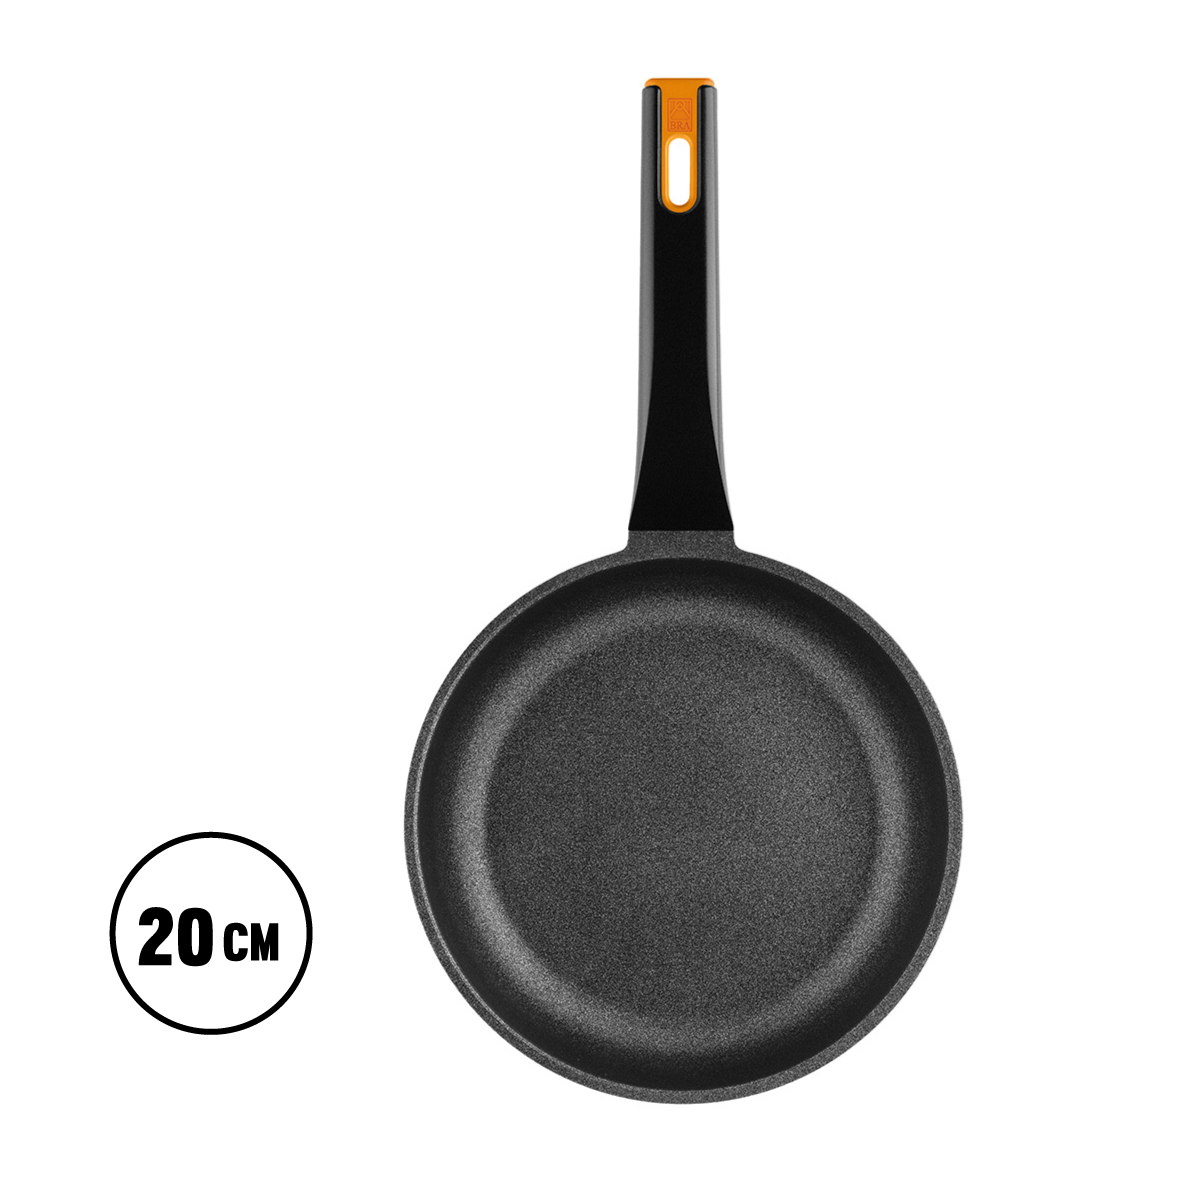 Sartén grill antiadherente Efficient Orange 28 cm - Aluminio fundido - BRA